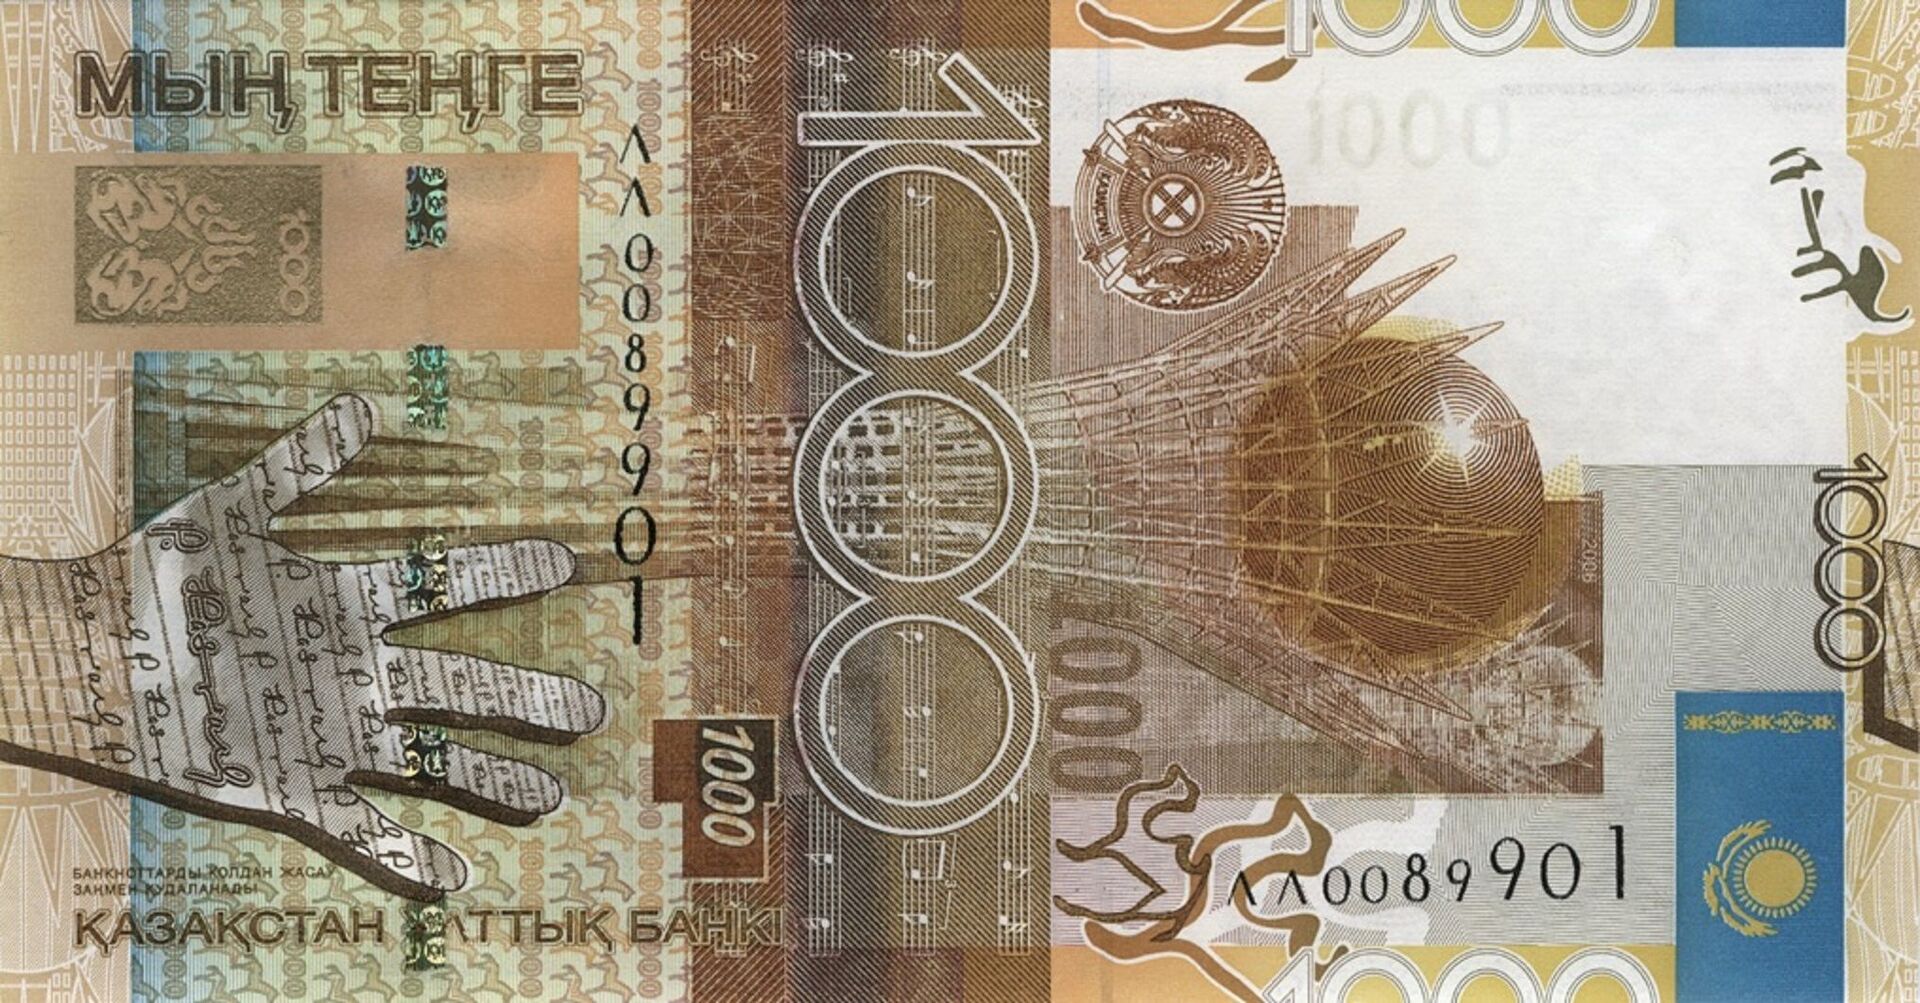 Ұлттық банк 15 жыл бұрын шыққан банкнотты қабылдауды тоқтатады - Sputnik Қазақстан, 1920, 10.02.2021